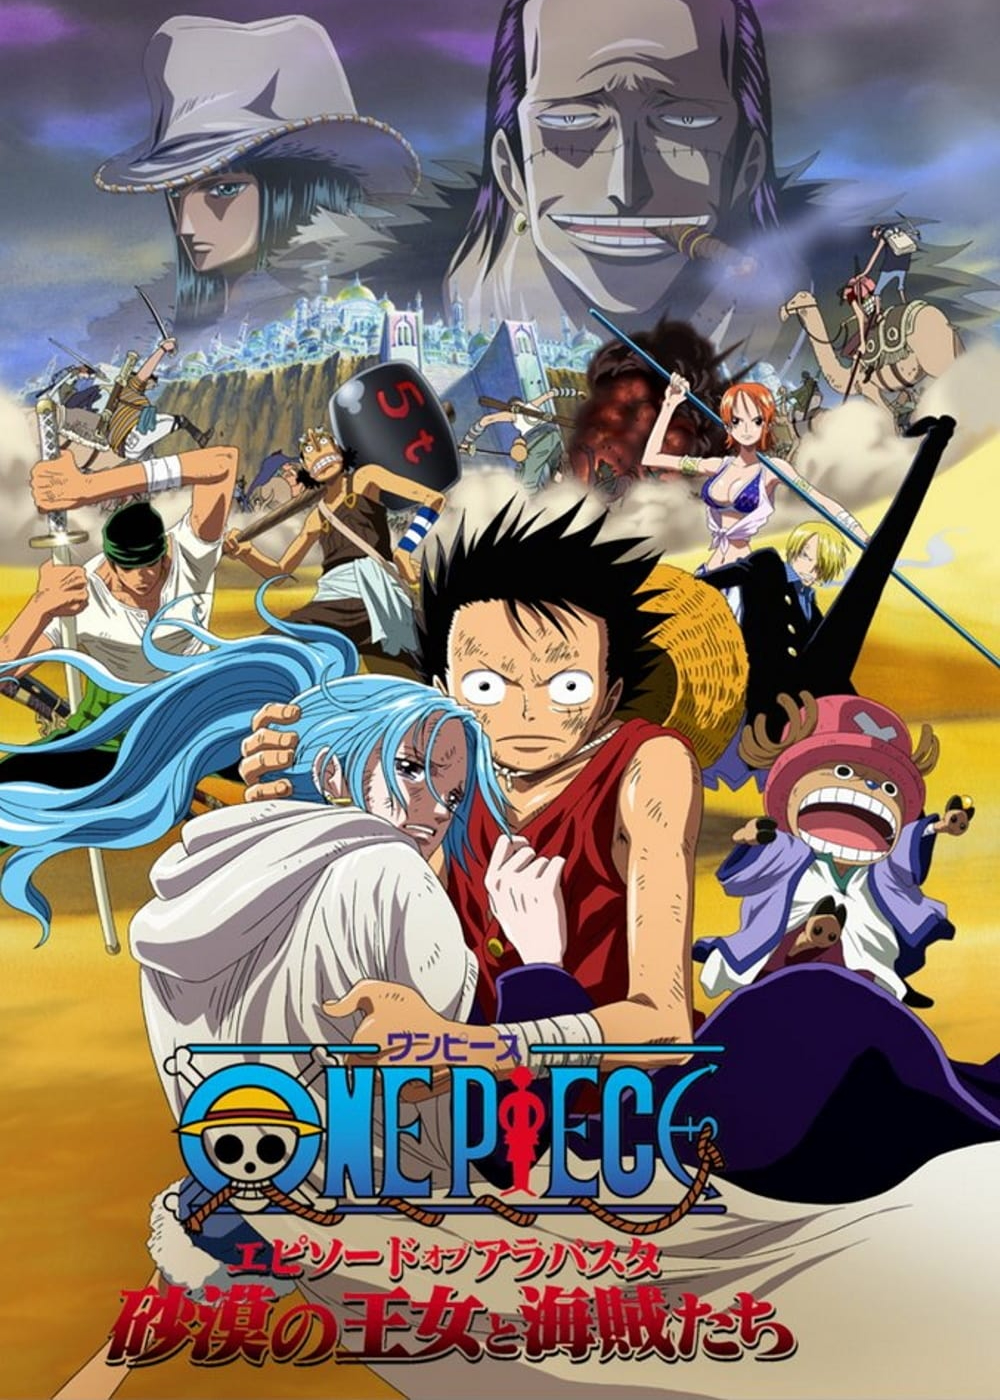 Xem Phim One Piece: Episode of Alabaster - Sabaku no Ojou to Kaizoku Tachi (One Piece: Episode of Alabaster - Sabaku no Ojou to Kaizoku Tachi)